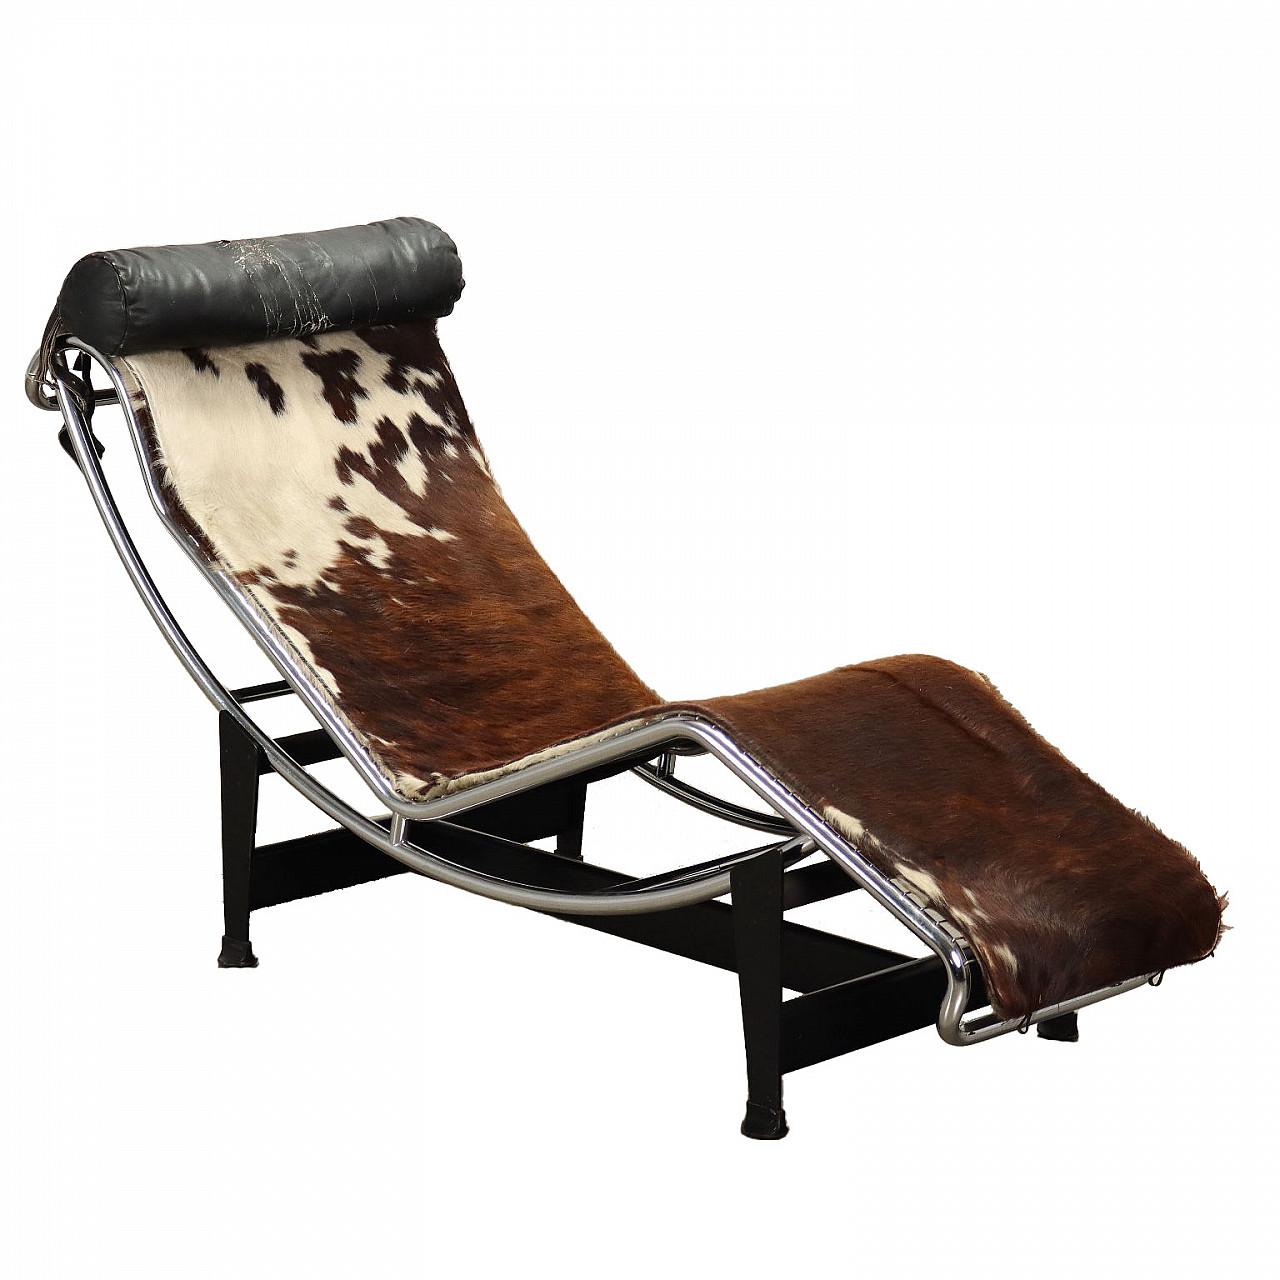 Chaise longue Le Corbusier - IntOndo